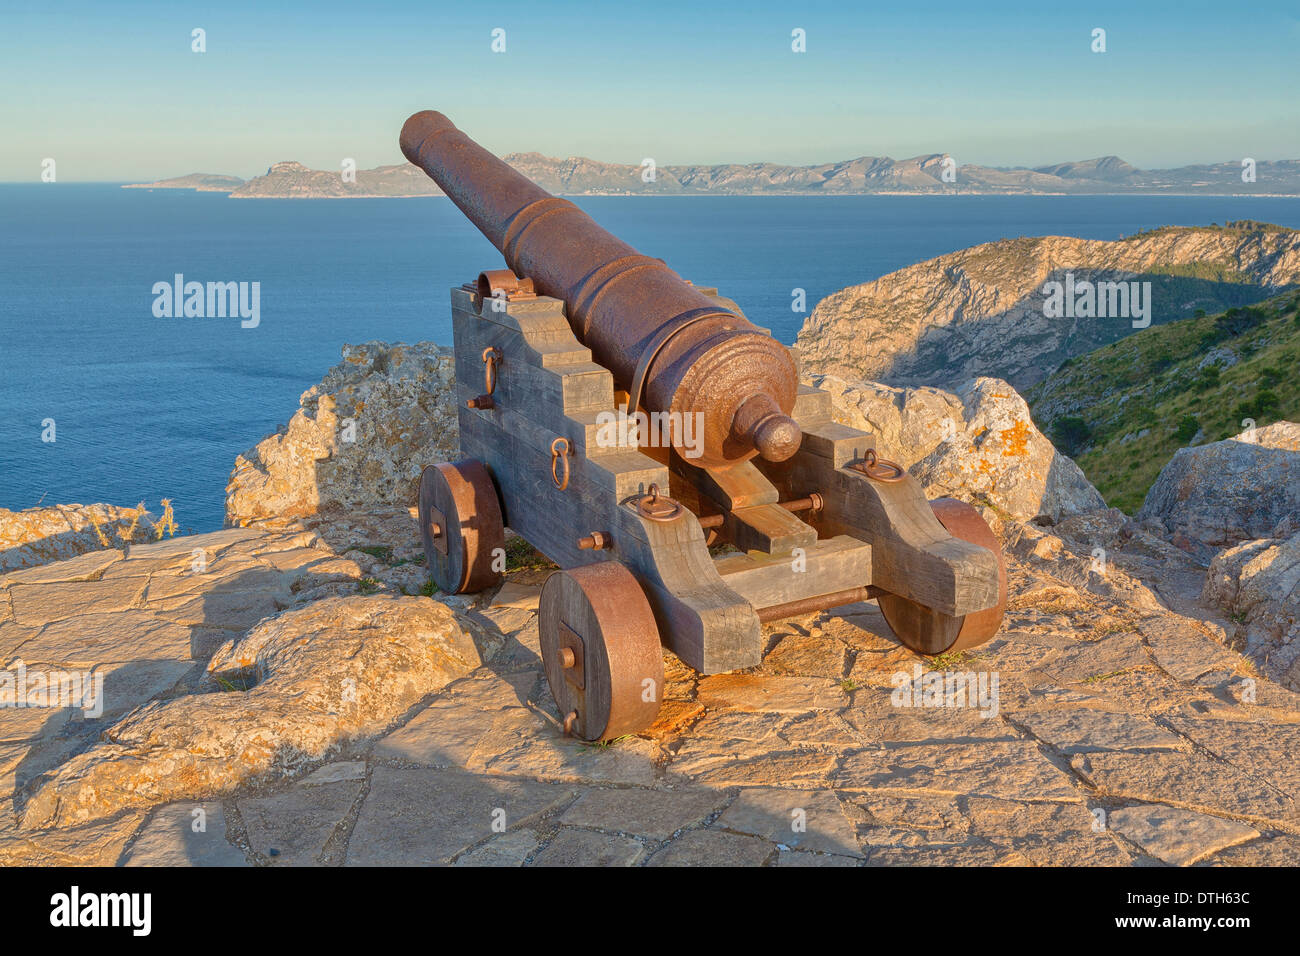 Old iron cannon at the top of Penya del Migdia. La Victoria area, Alcúdia region. Majorca, Balearic islands, Spain Stock Photo